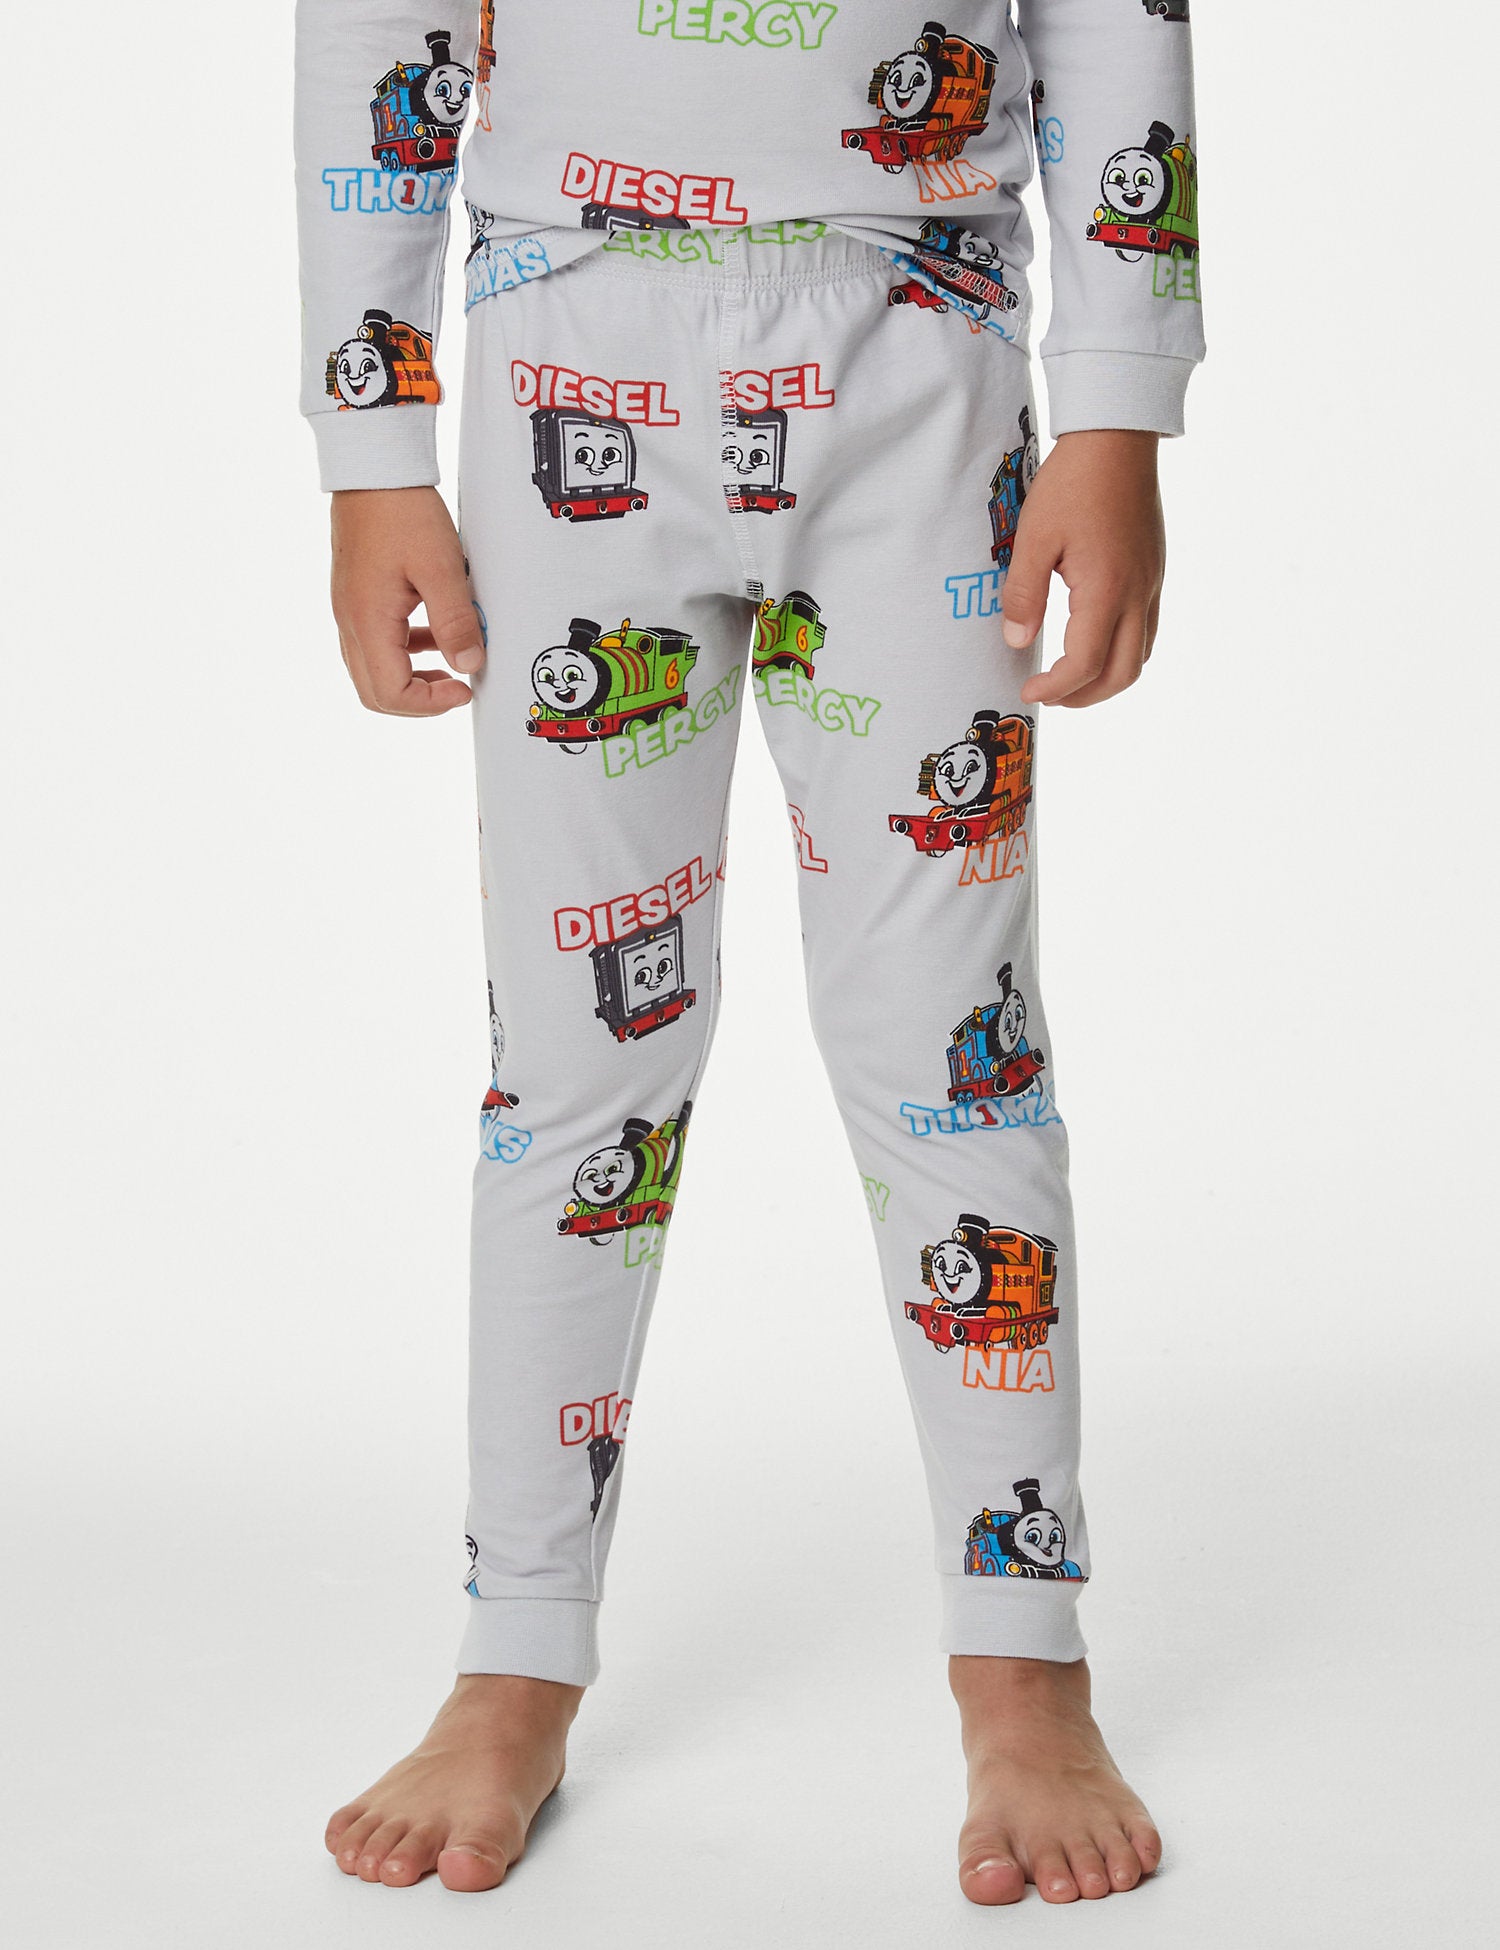 Thomas & Friends™ Pyjamas